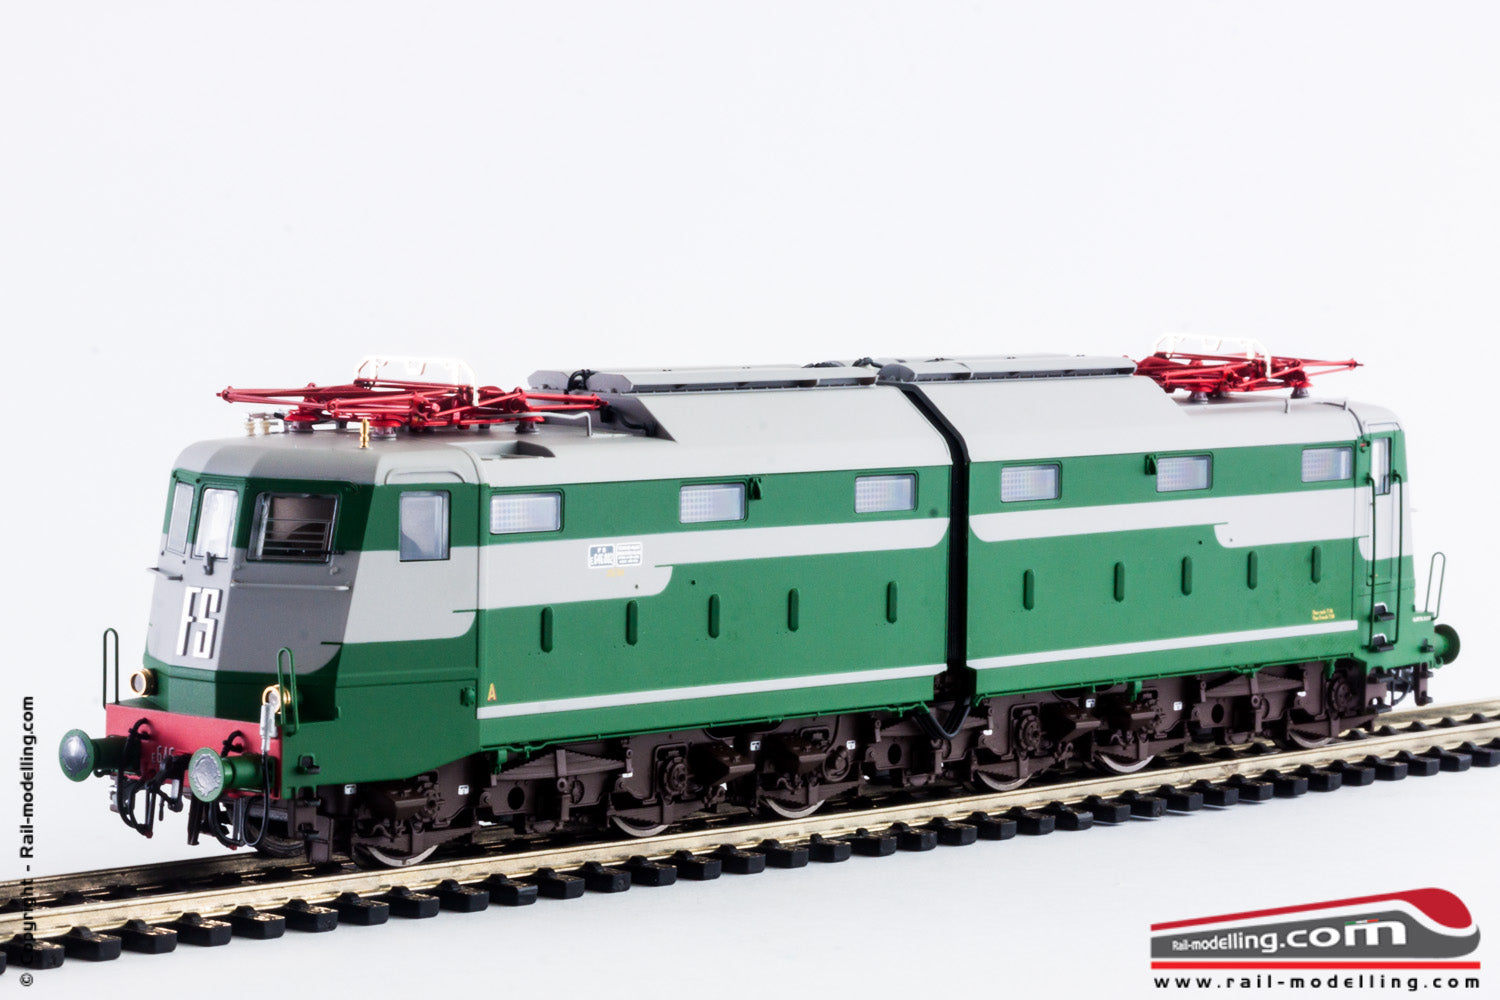 LE MODELS LE20653 - H0 1:87 - Locomotiva elettrica FS E 646 002 livrea grigio nebbia / verde fregio FS sperimentale